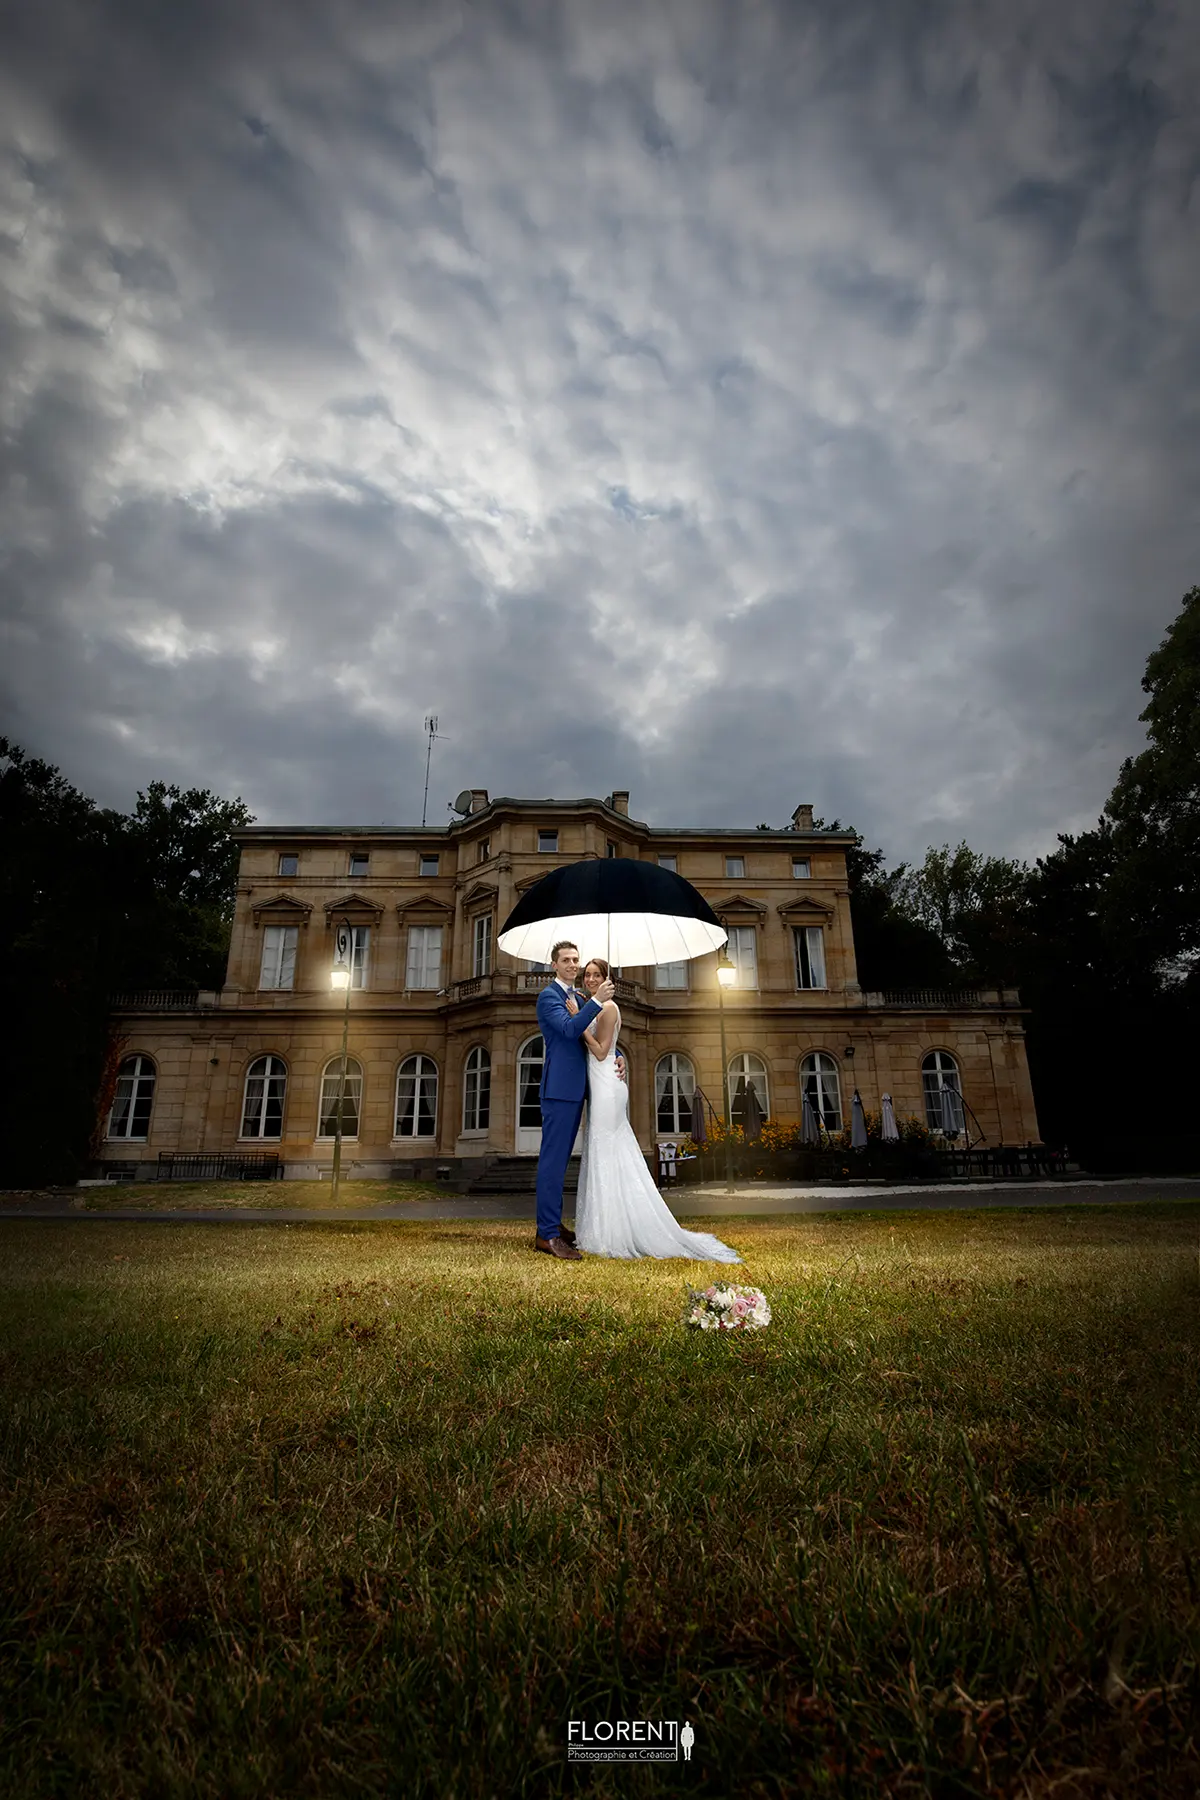 photographe mariage magique mariage parc chateau motte fenelon cambrai arras sous parapluie lumineux florent photographe boulogne sur mer lille le touquet paris